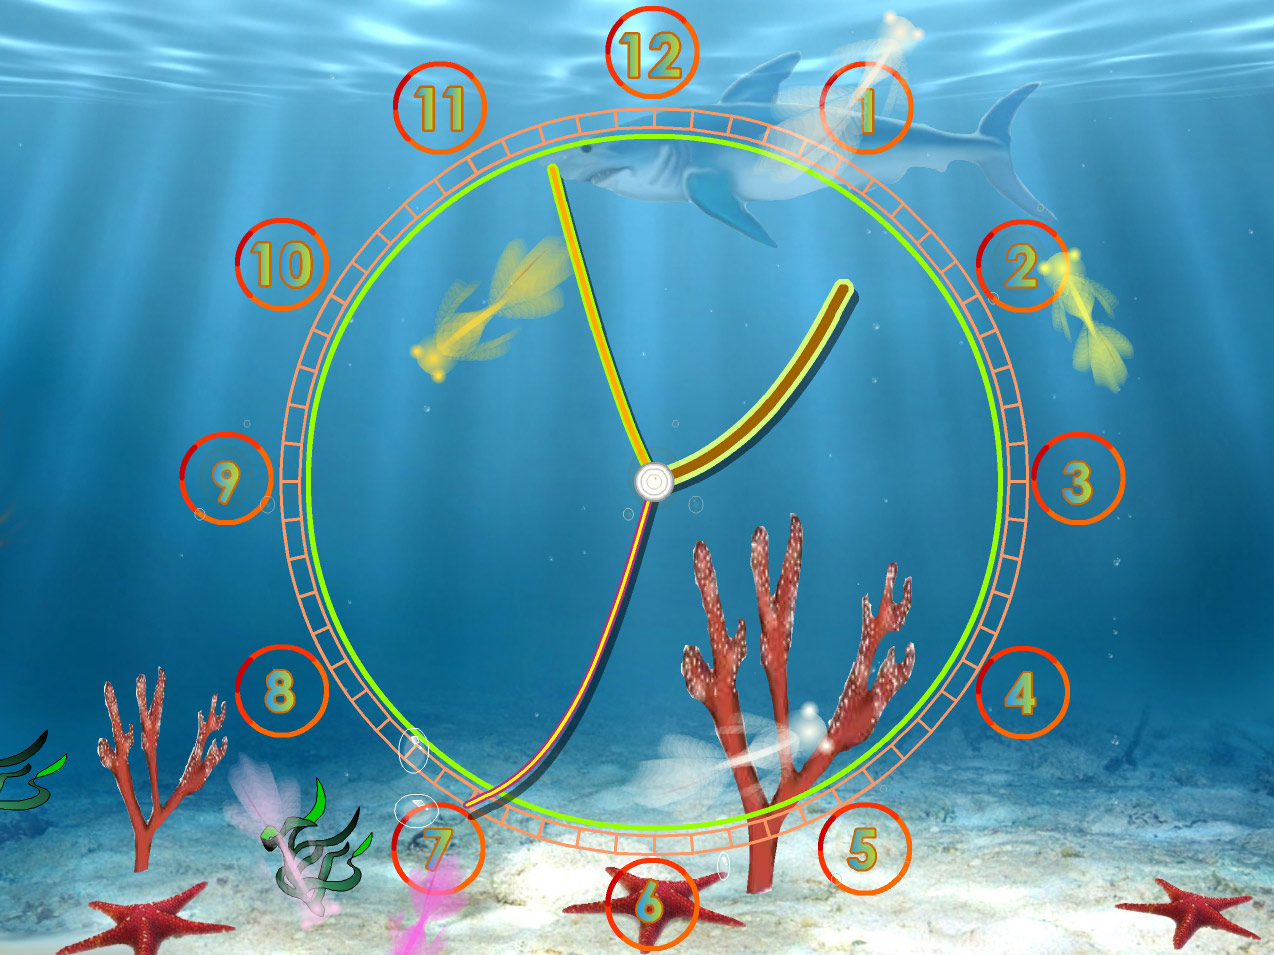 Screensaver Install Live Wallpaper Aquarium Clock